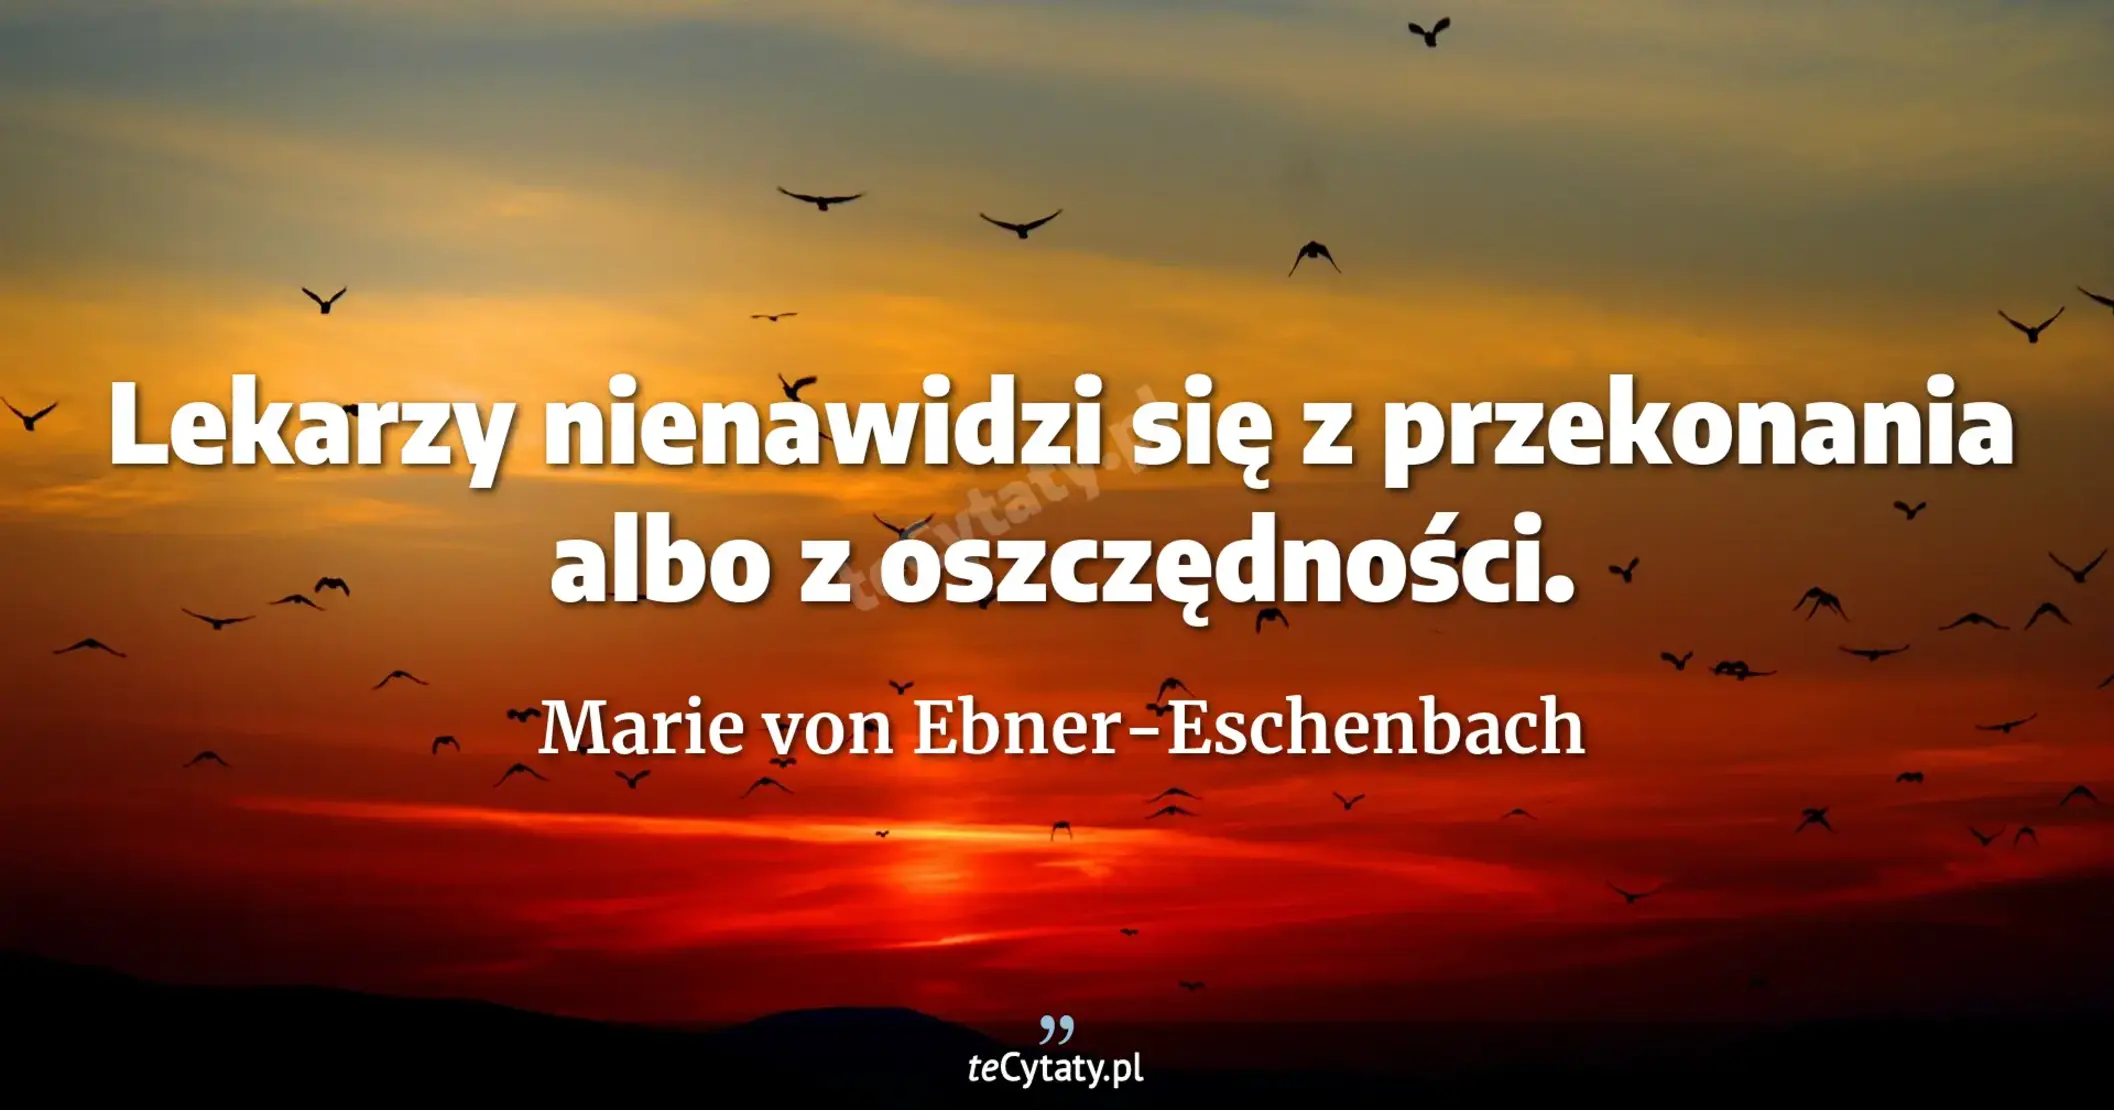 Lekarzy nienawidzi się z przekonania albo z oszczędności. - Marie von Ebner-Eschenbach